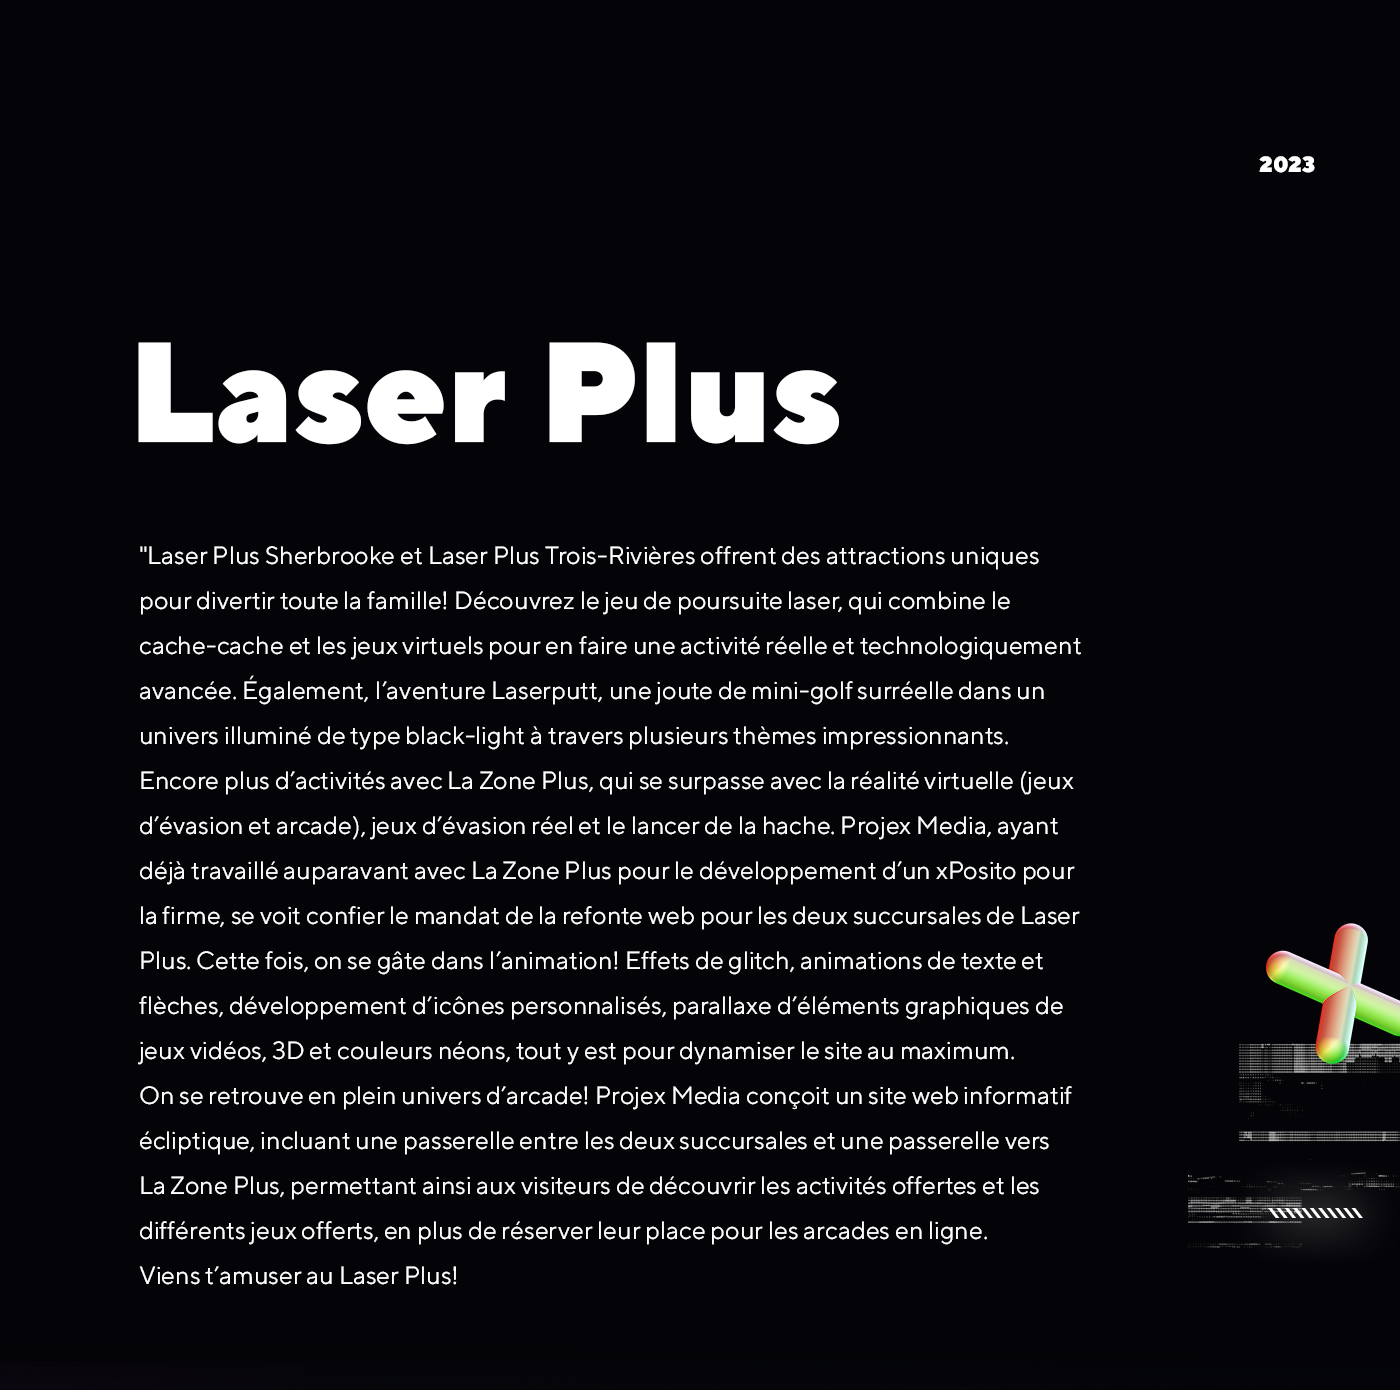 Laser Plus Sherbrooke et Trois-Rivières / 2023 - Réalisation signée Projex Media